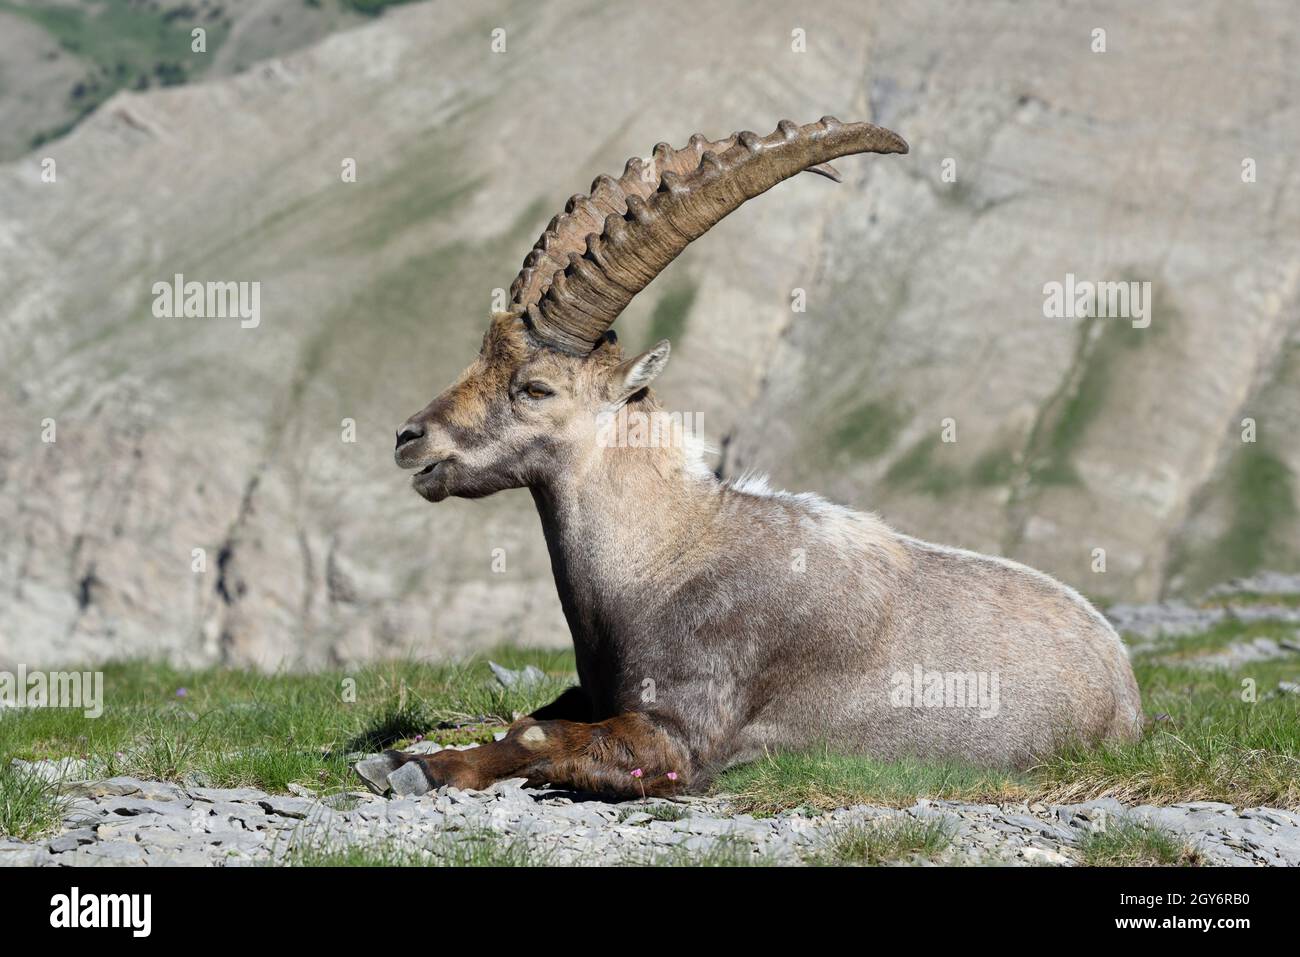 Portrait d'Ibex alpin mâle adulte unique, Capra ibex, dans le Parc National du Mercantour Alpes françaises, avec camouflage couleur rocheuse ou beige Coat, France Banque D'Images